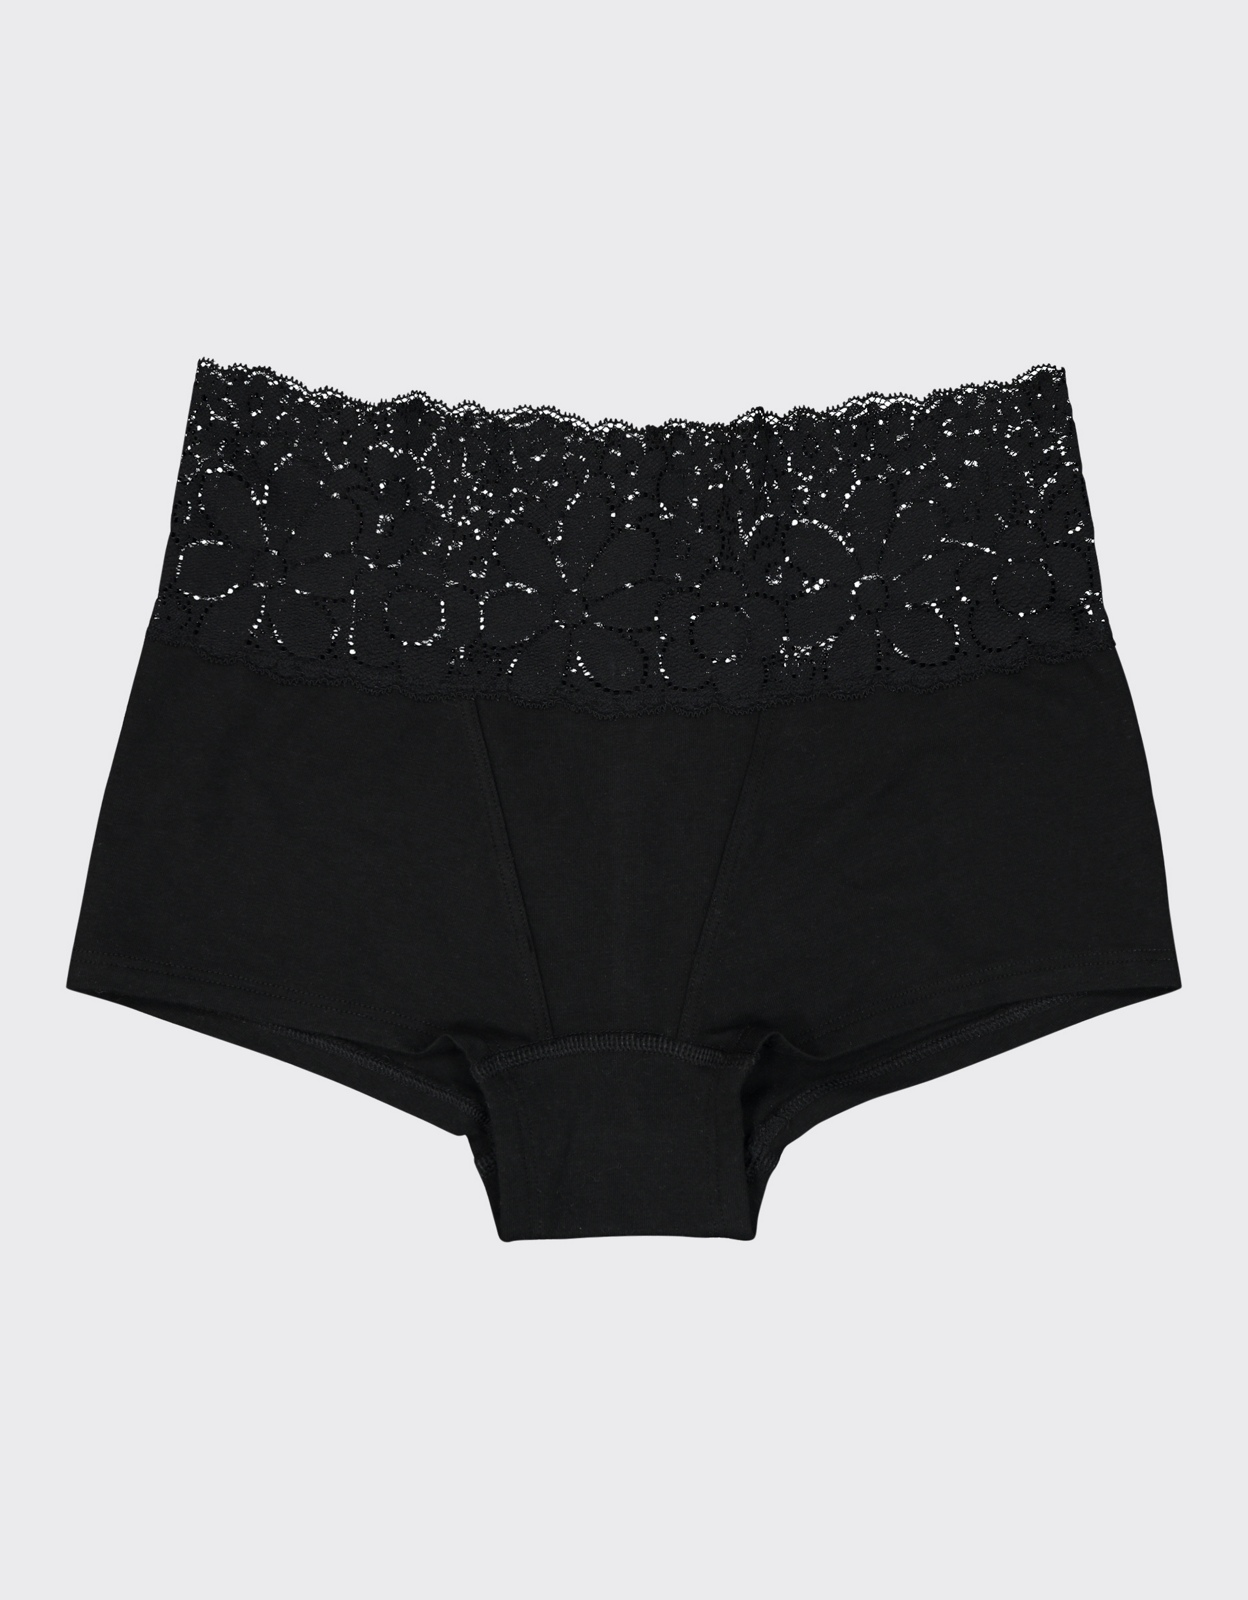 Buy Aerie Cotton POP! Lace Boyshort Underwear online